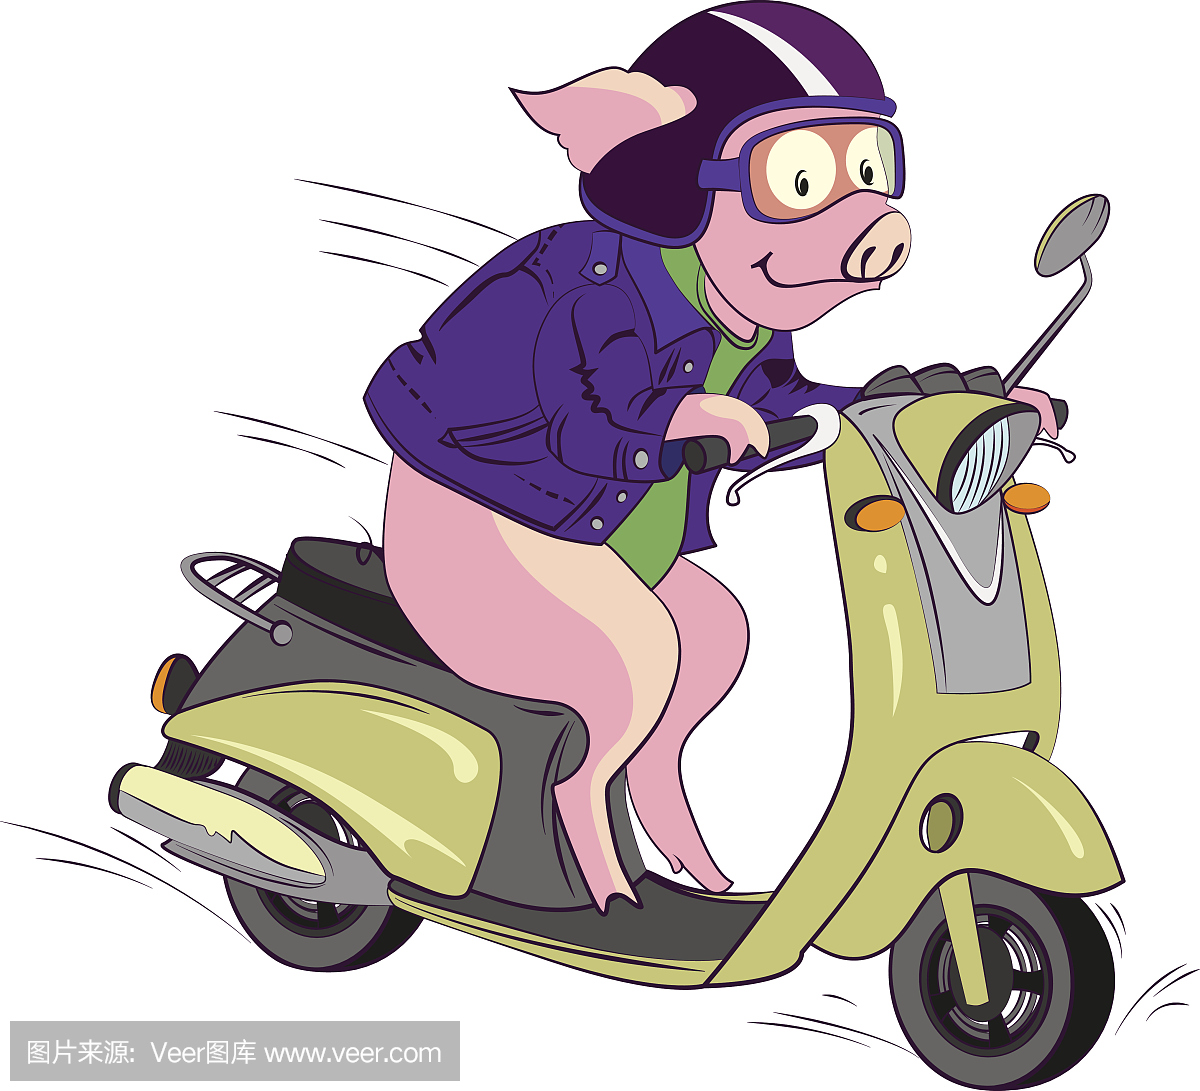 生来就要和开着蓝色汽车的可爱猪一起打印. 卡通风格的幽默背景 向量例证 - 插画 包括有 苗圃, 背包: 208043833